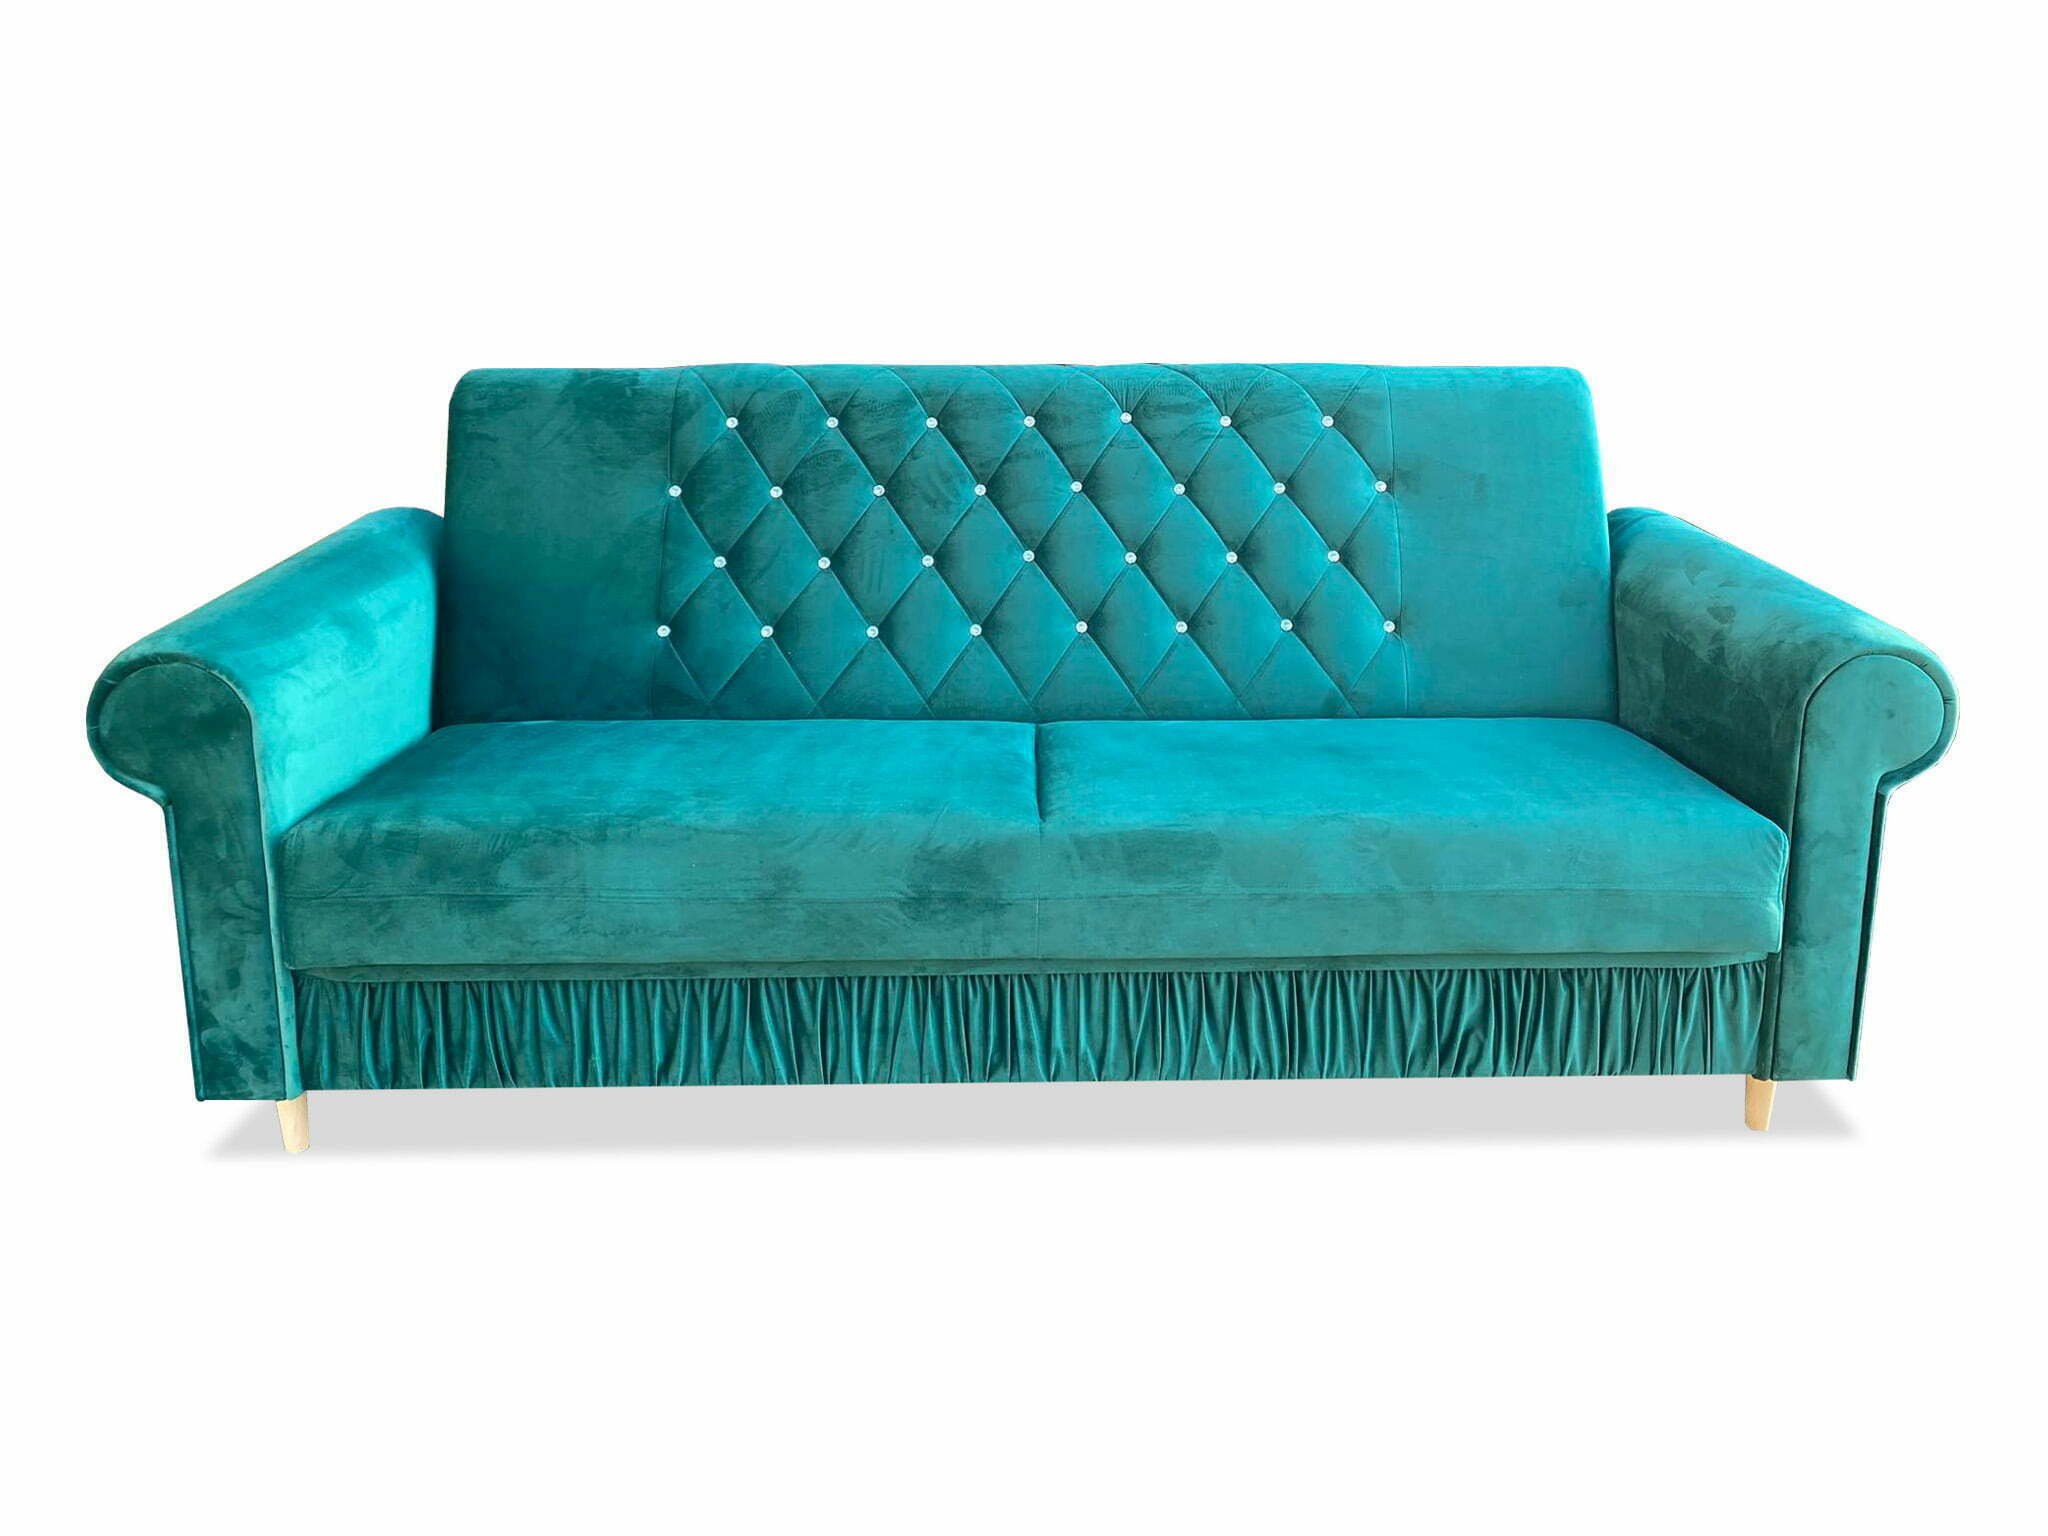 Zielona kanapa w salonie - z czym ją połączyć?